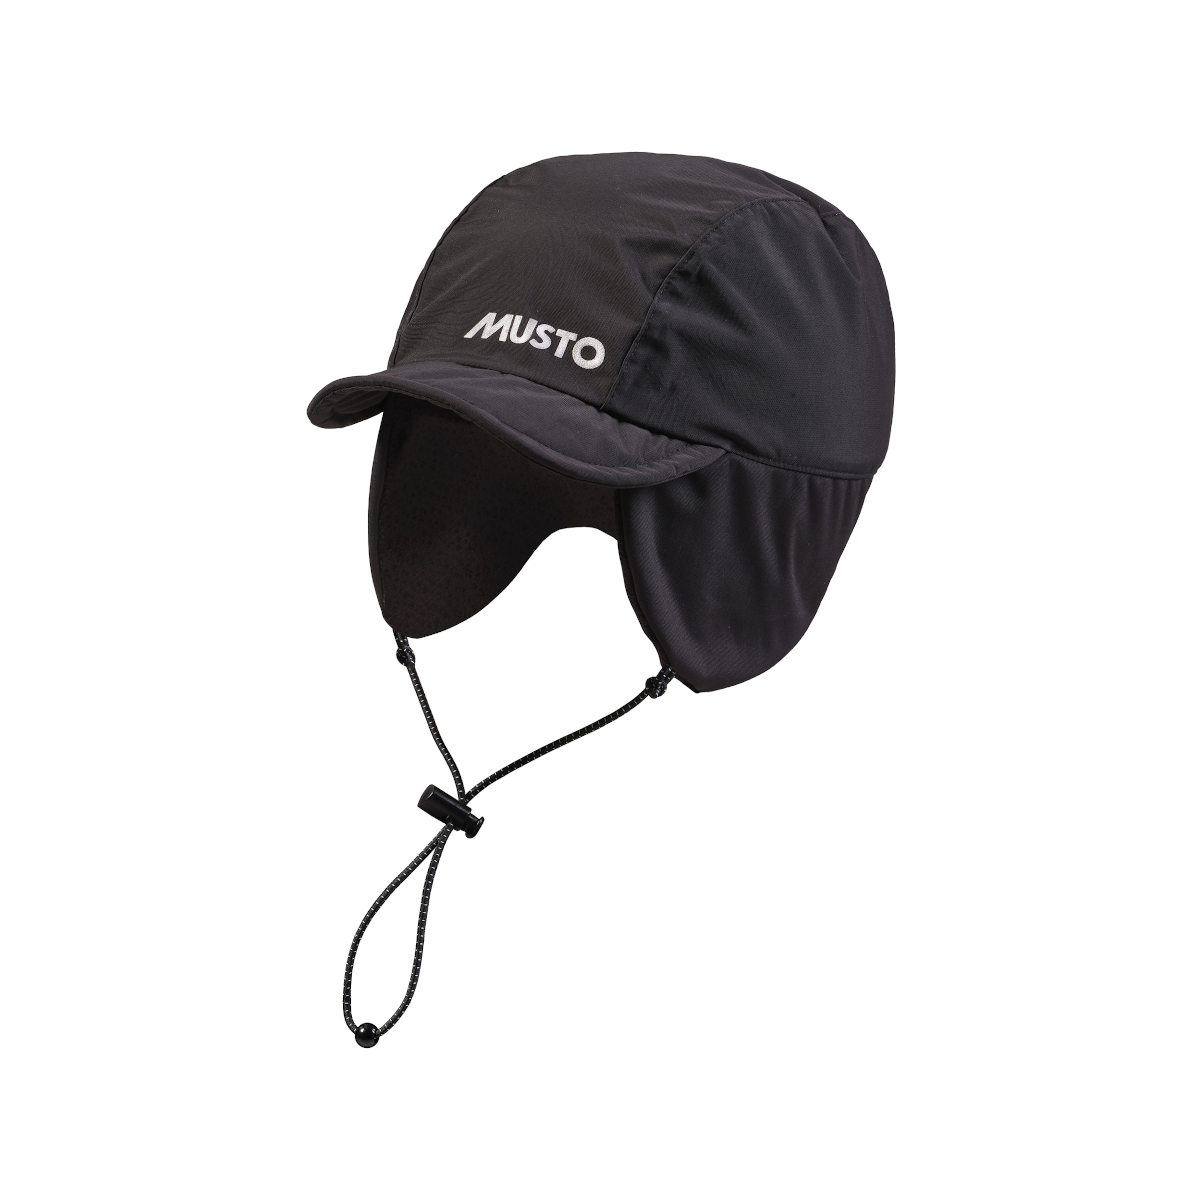 Musto MPX casquette voile imperméable doublée polaire noire